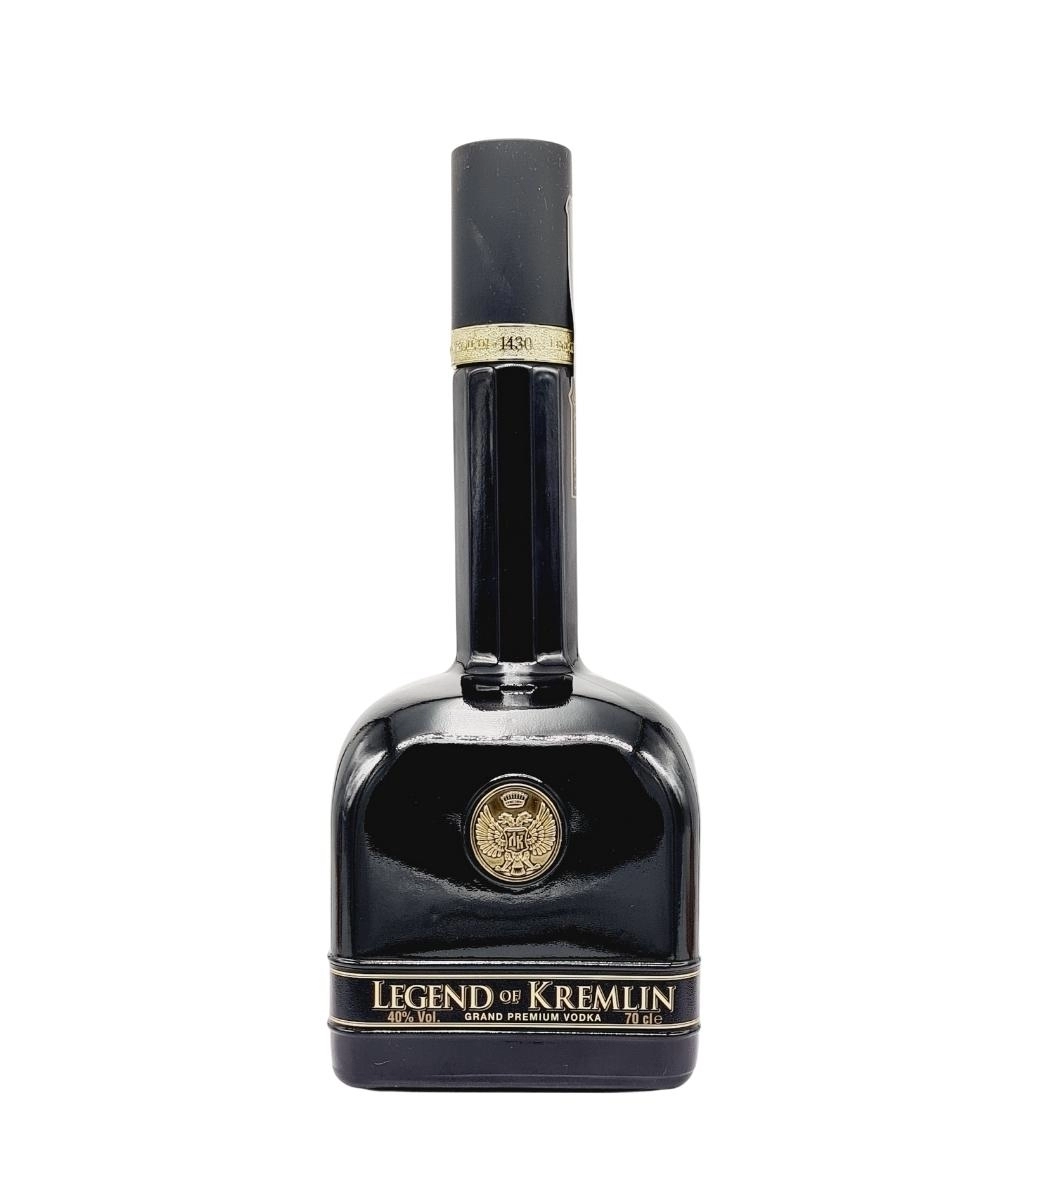  Vodka Legend of Kremlin Black Bottle 0.7L